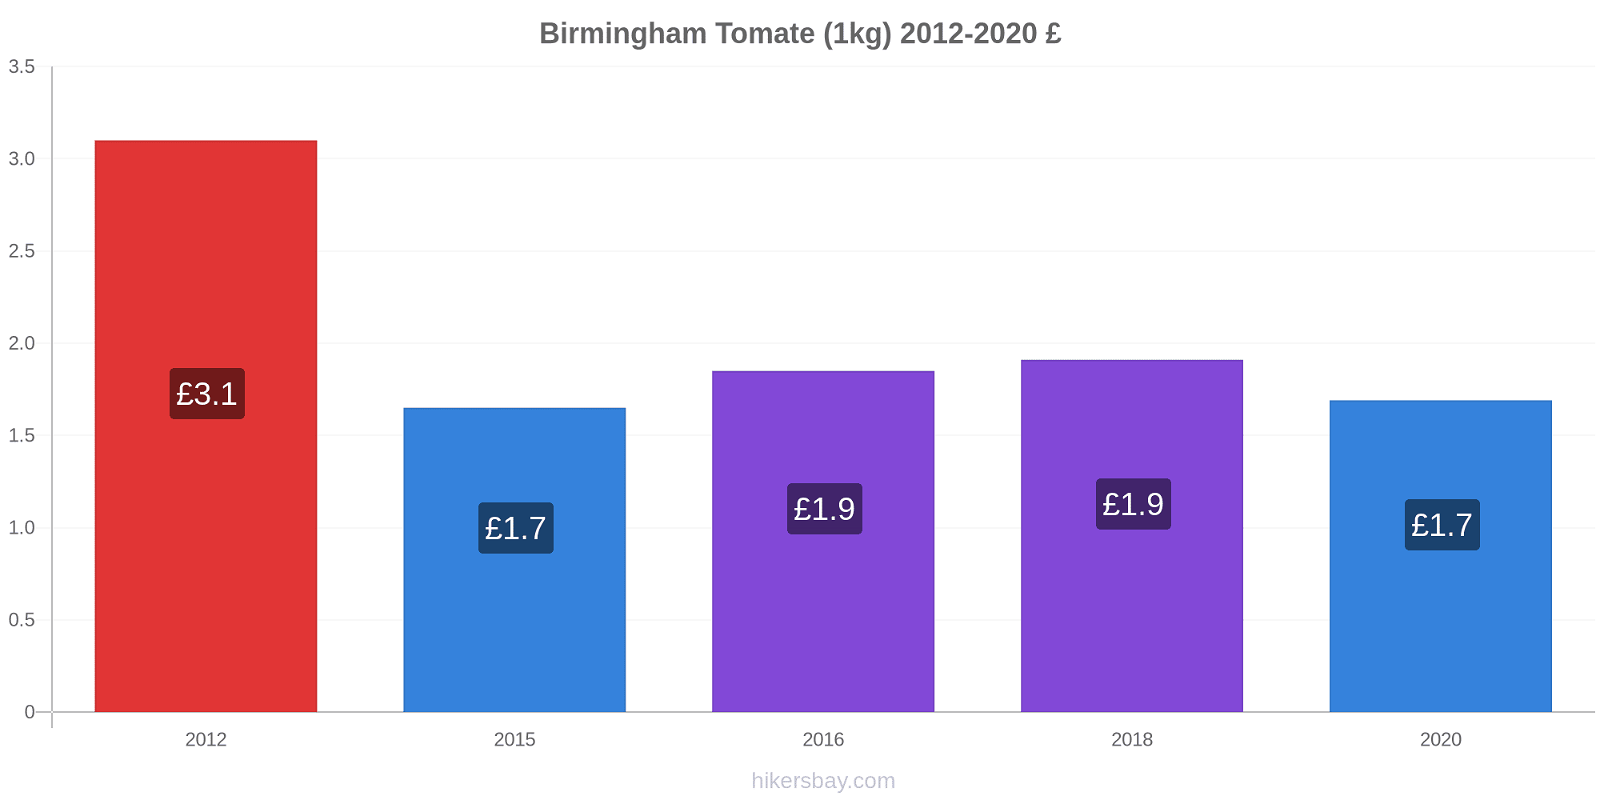 Birmingham variação de preço Tomate (1kg) hikersbay.com